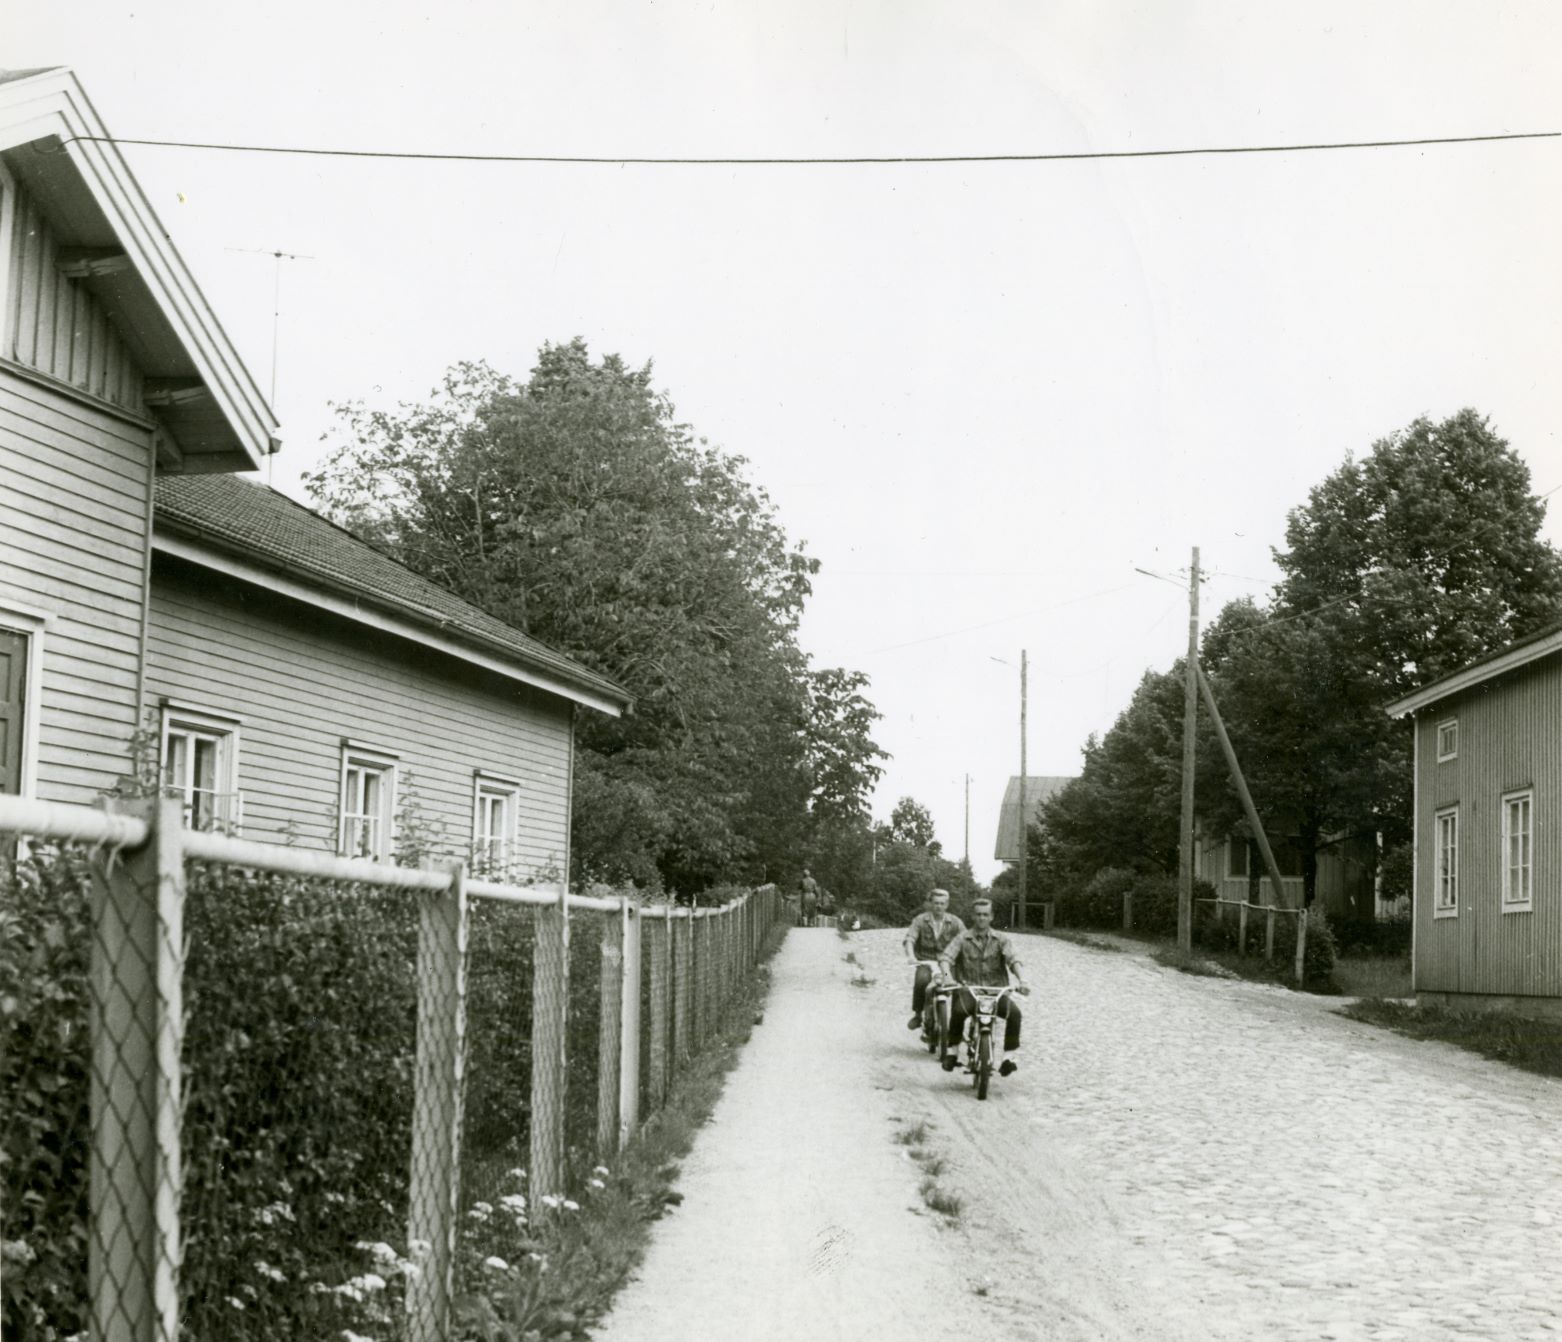 Vasemmalla 1860-luvulla rakennettu Pitkä kasarmi ja oikealla näkyy 1940-luvun jälleenrakennustalon kulmaa Maantiellä kuvattuna 1970-luvulla. Kuva: Riihimäen kaupunginmuseo